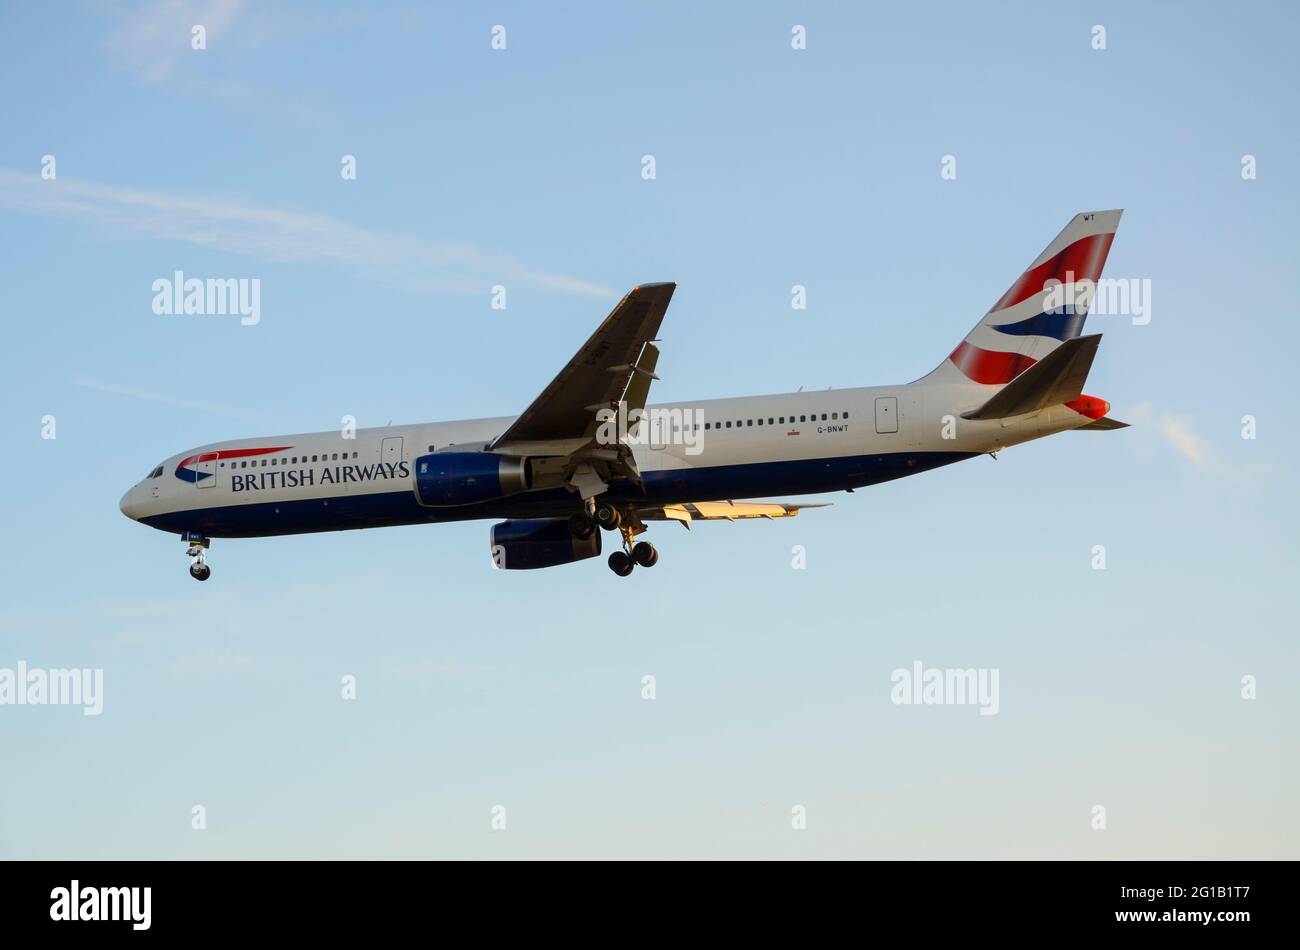 British Airways Boeing 767 300 Airliner-Düsenflugzeug G-BNWT landet am Flughafen London Heathrow, Großbritannien. Langstreckenflüge mit Großraumflugzeuge Stockfoto